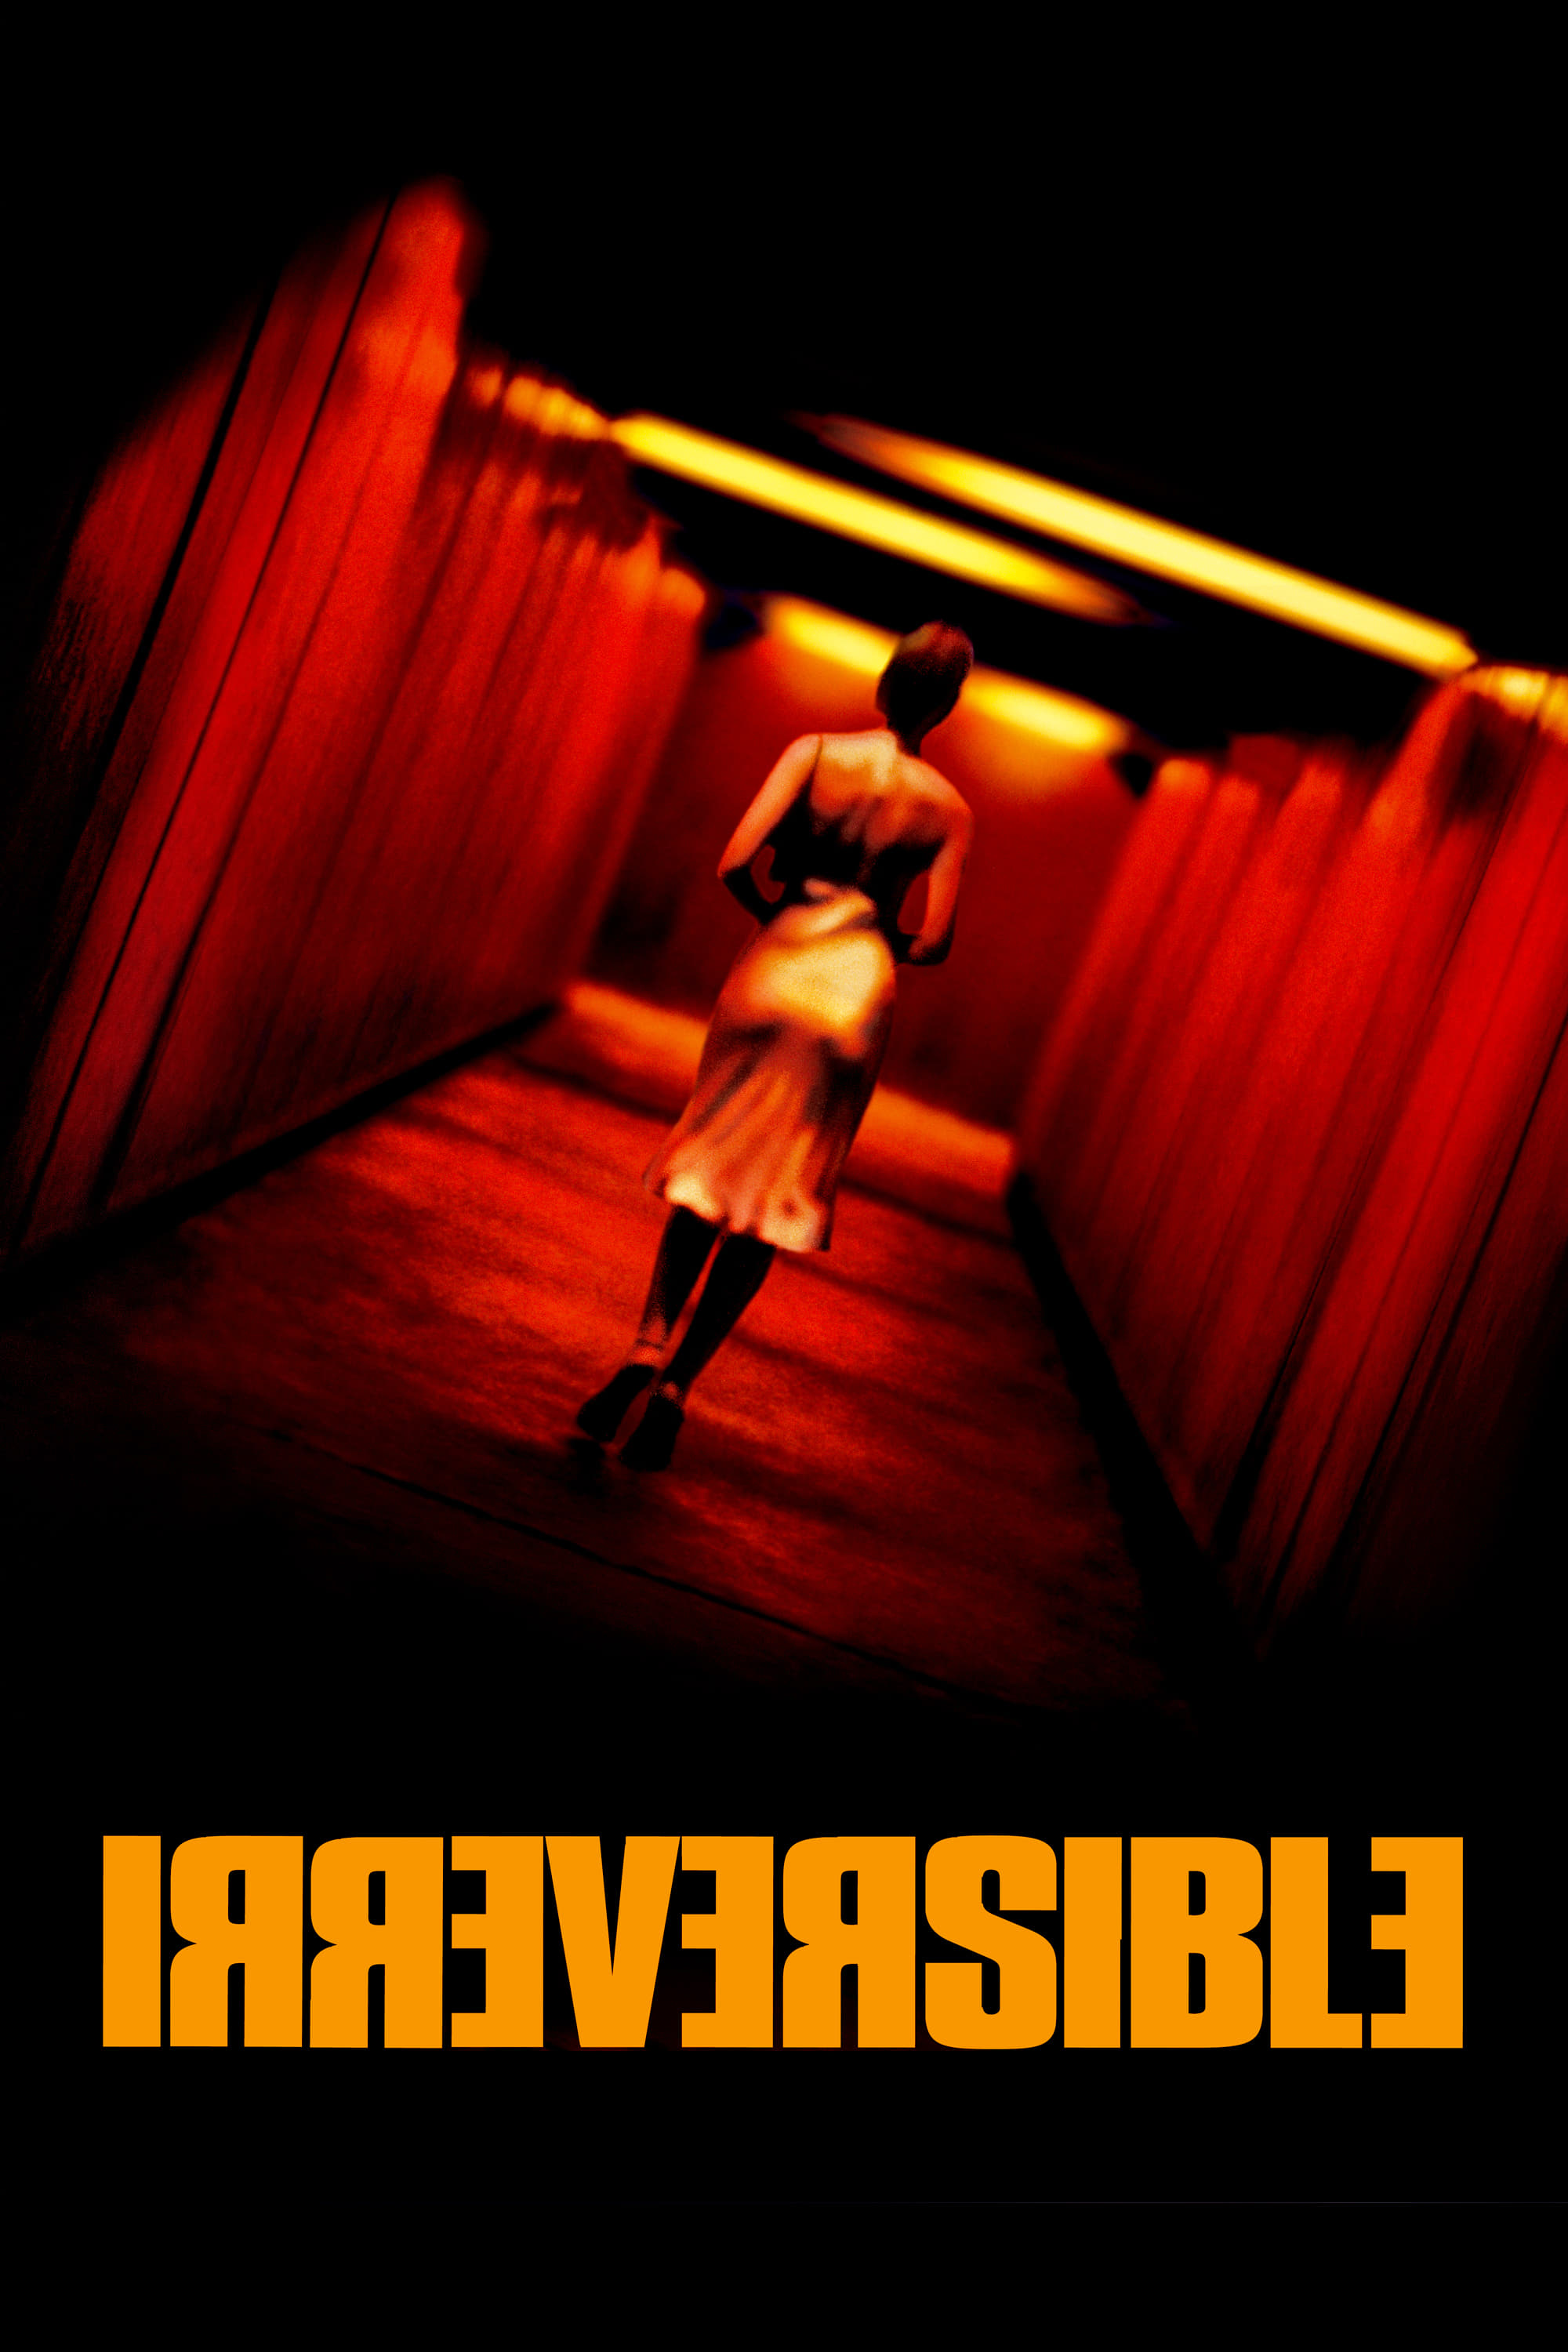 Chuyện Đã Rồi (Irreversible) [2002]